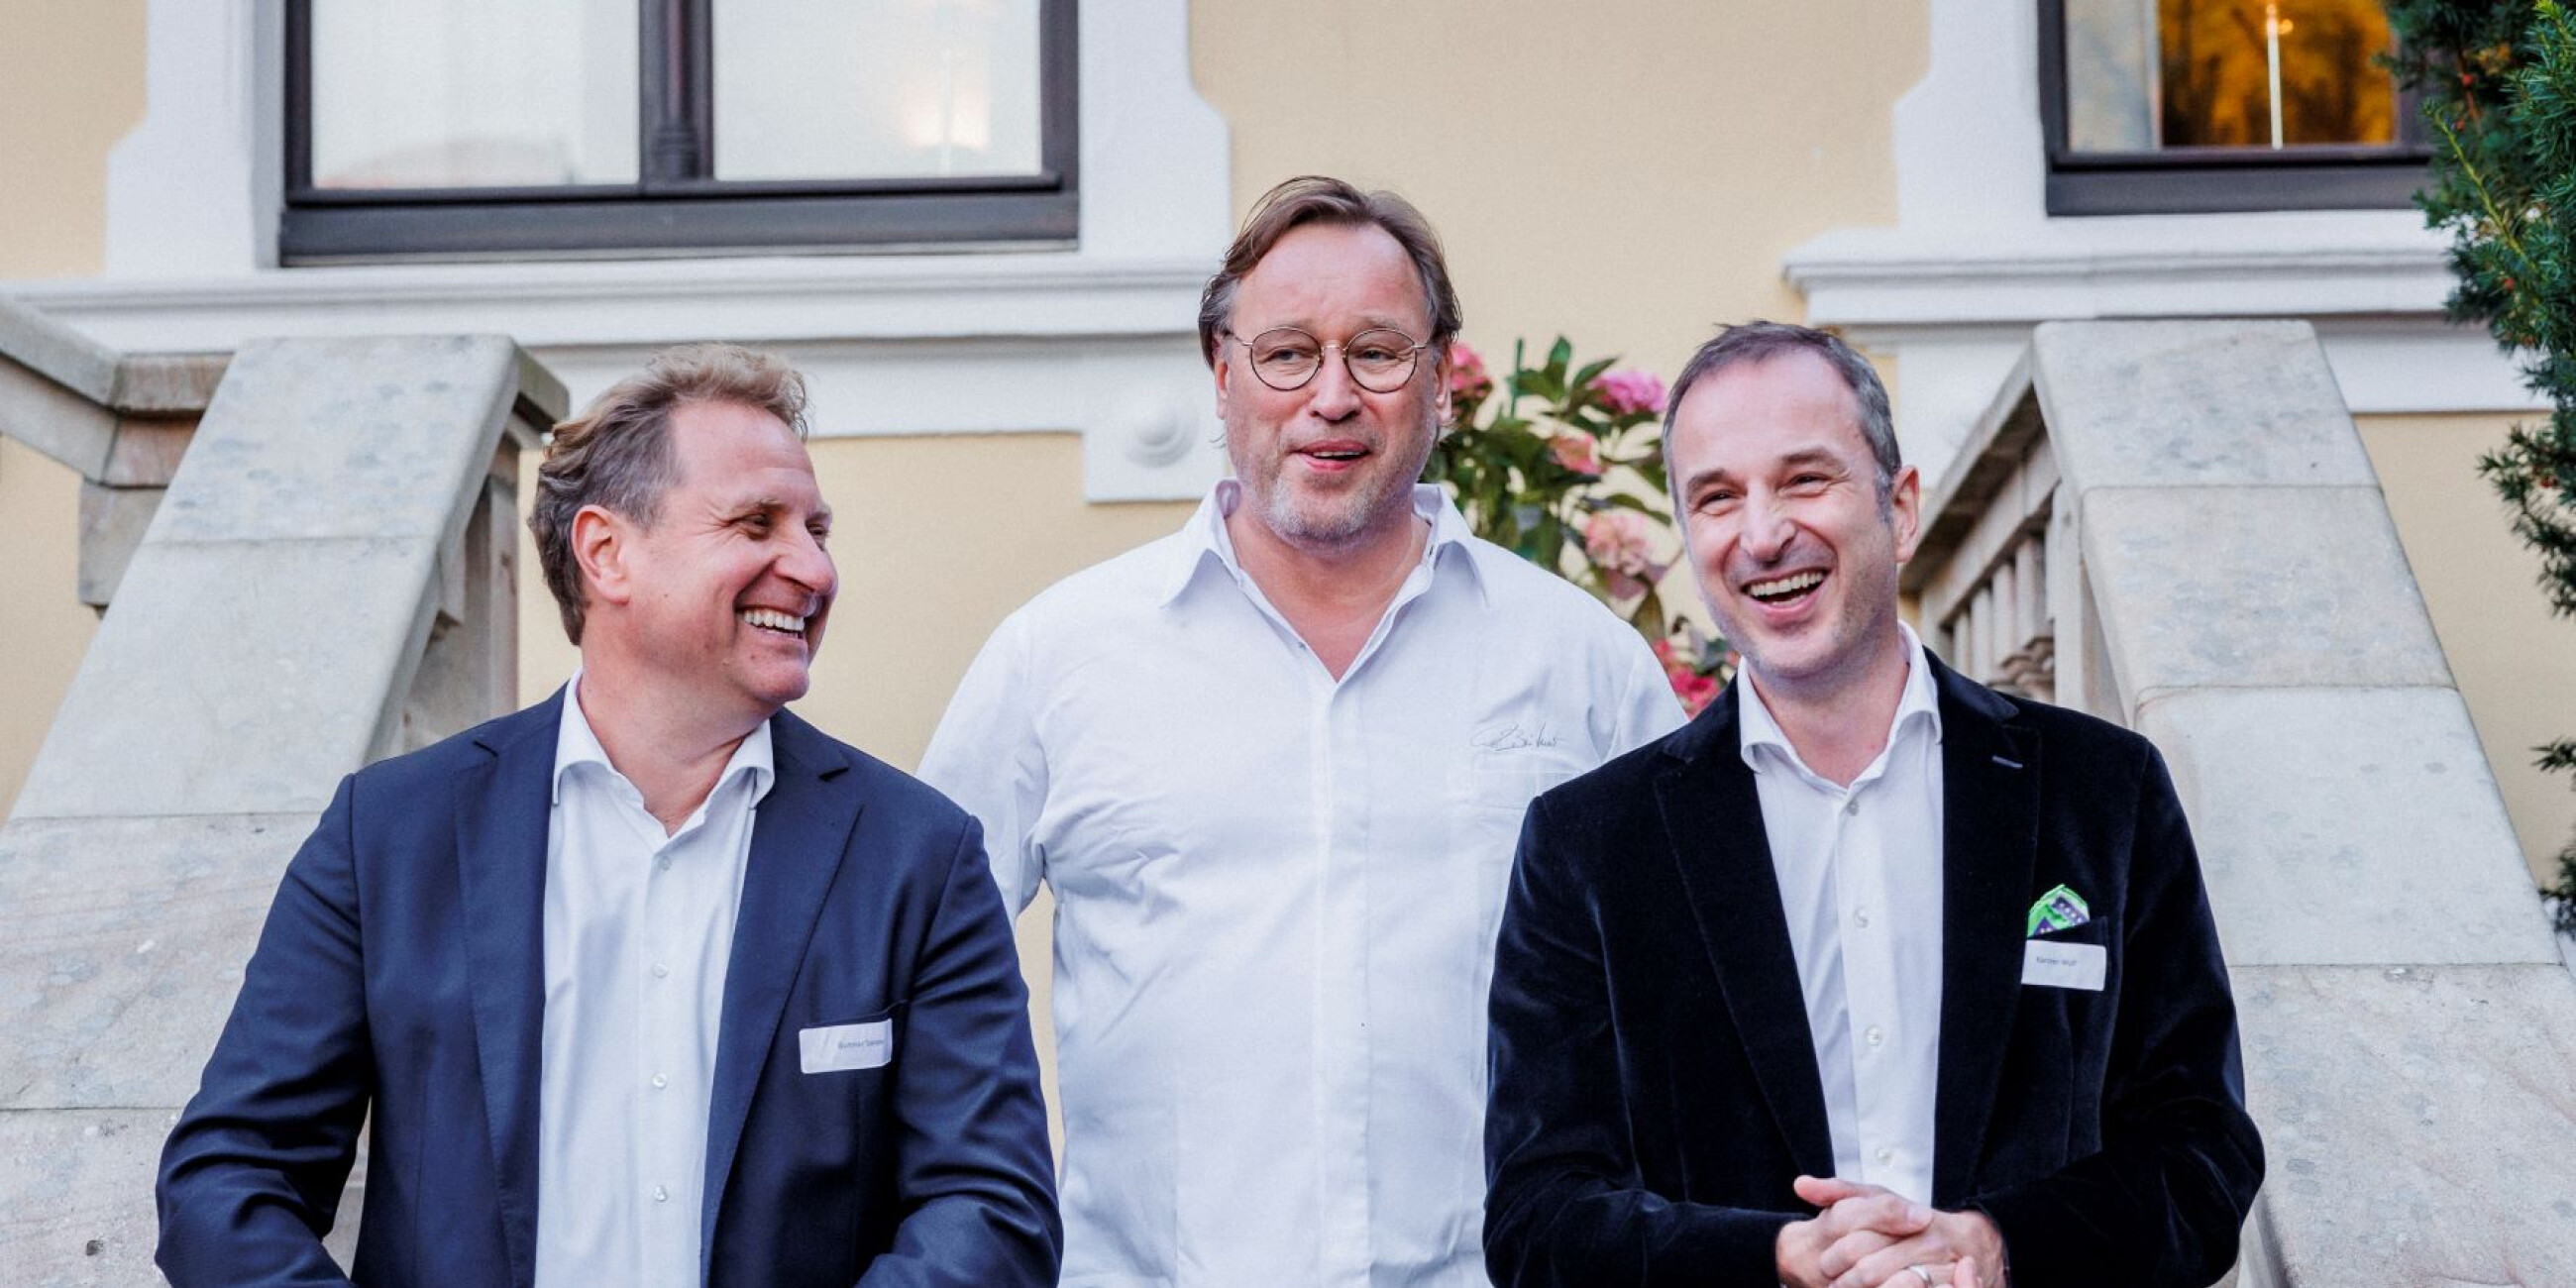 Initiatoren des Charity Dinners für HelpAge - v.l.: Gunnar Sander, Thomas Bühner, Karsten Wulf - Copyright Kai Ostermann